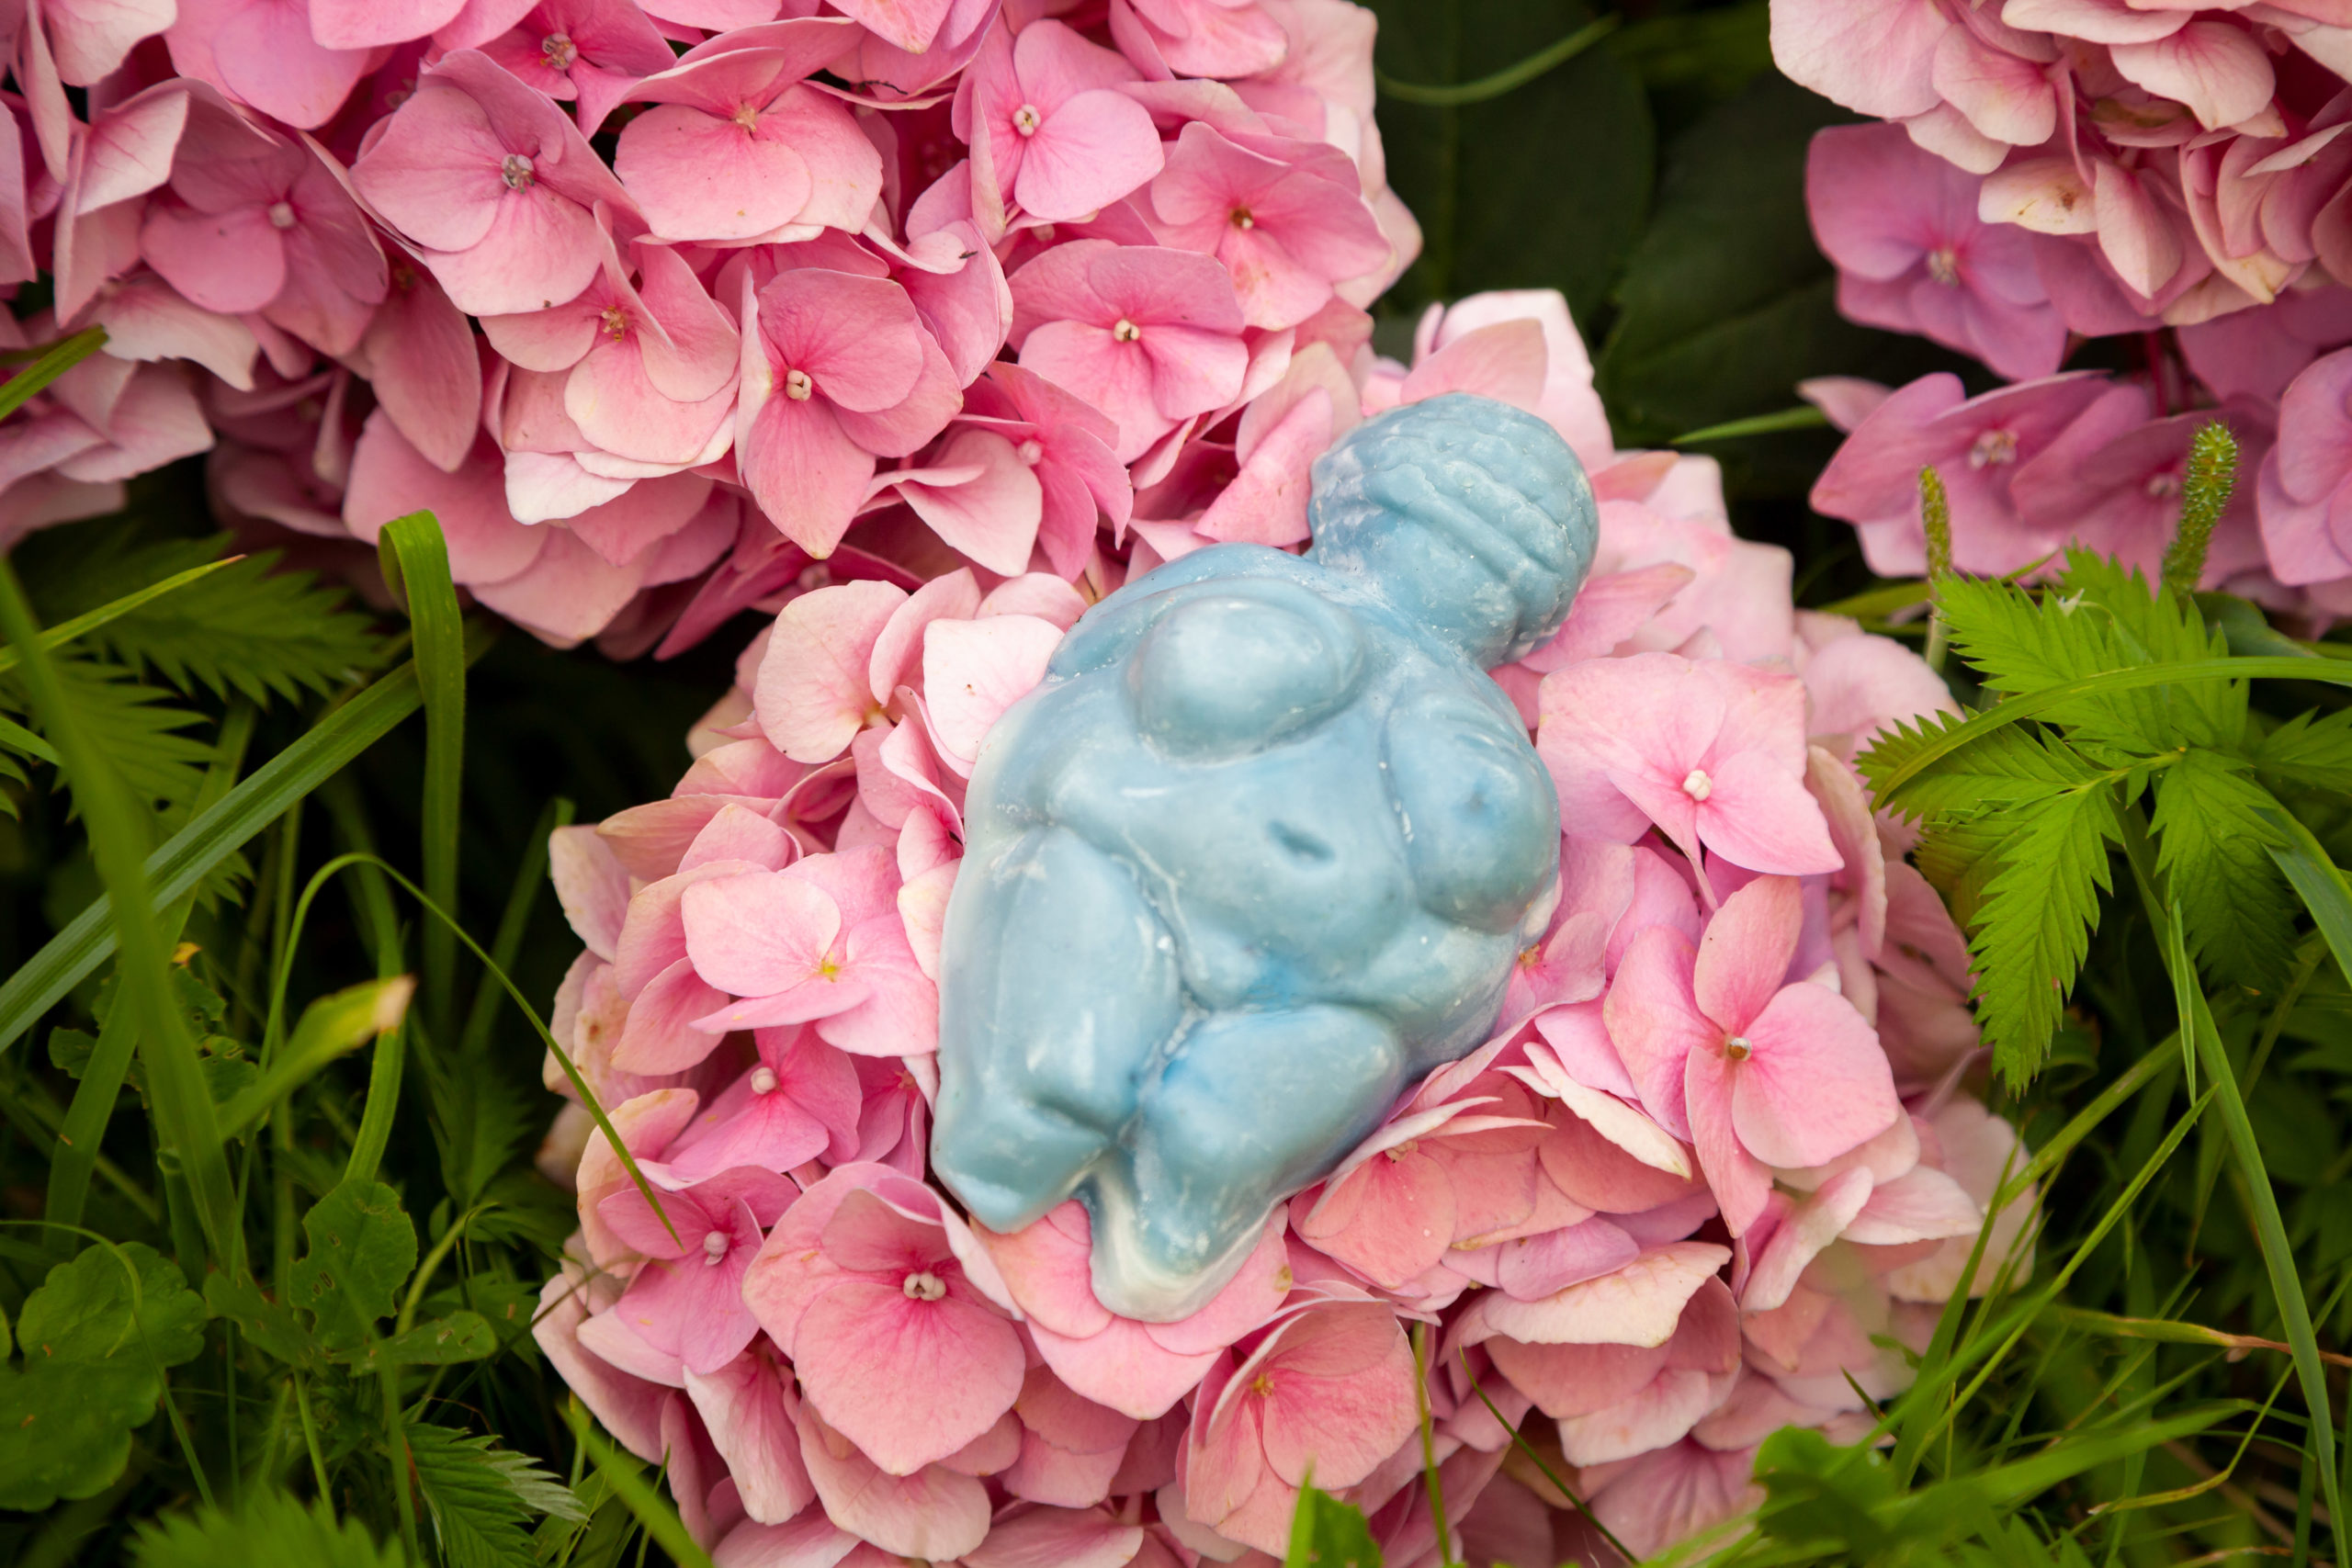 Die Venus von Willendorf ist als Göttinnenfigurine ein Symbol für die weibliche Urkraft